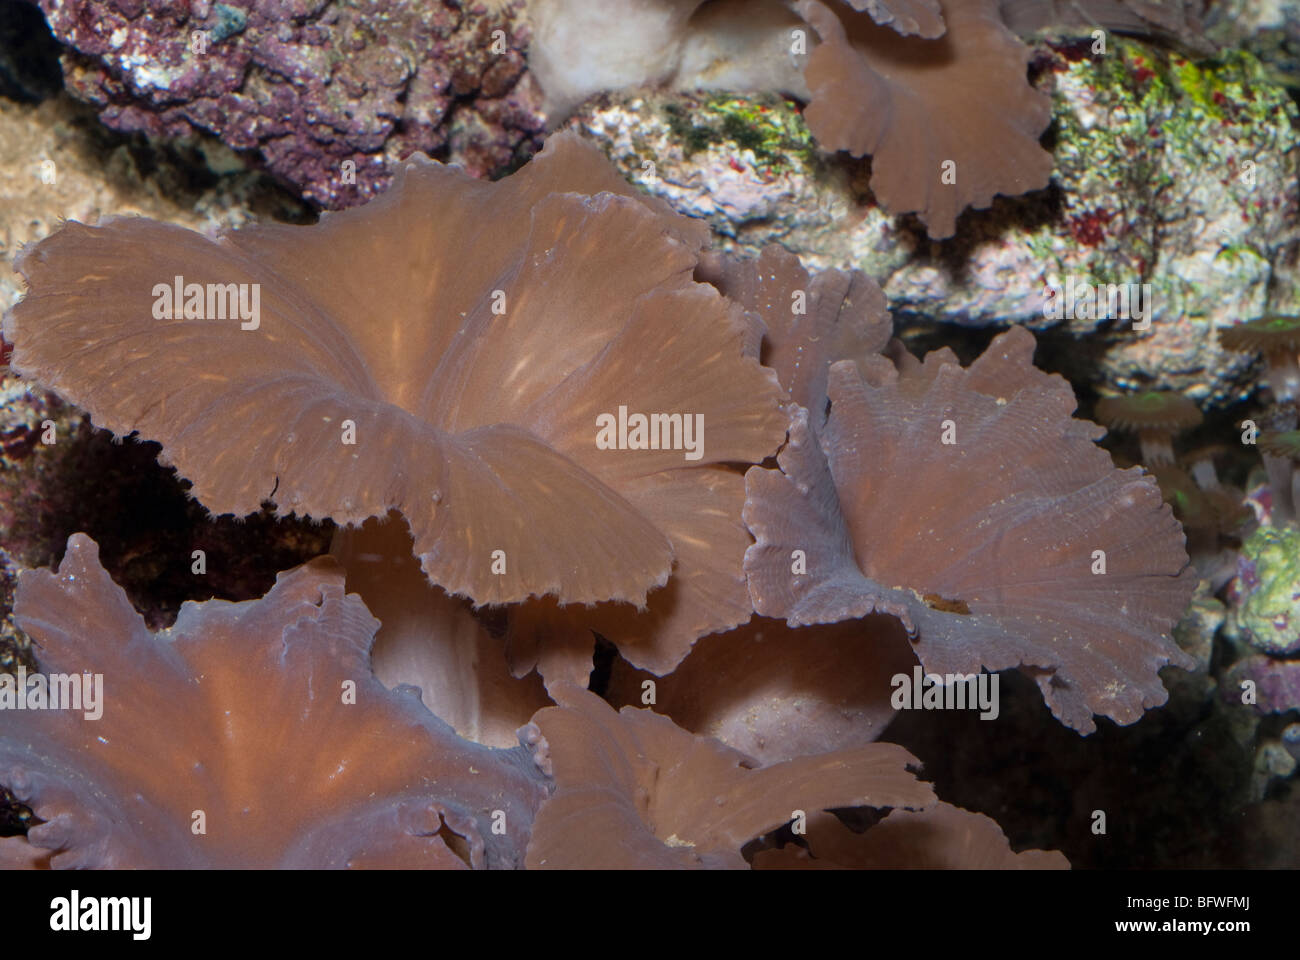 Los corales blandos Sinularia dura, Indo-océano pacífico Foto de stock